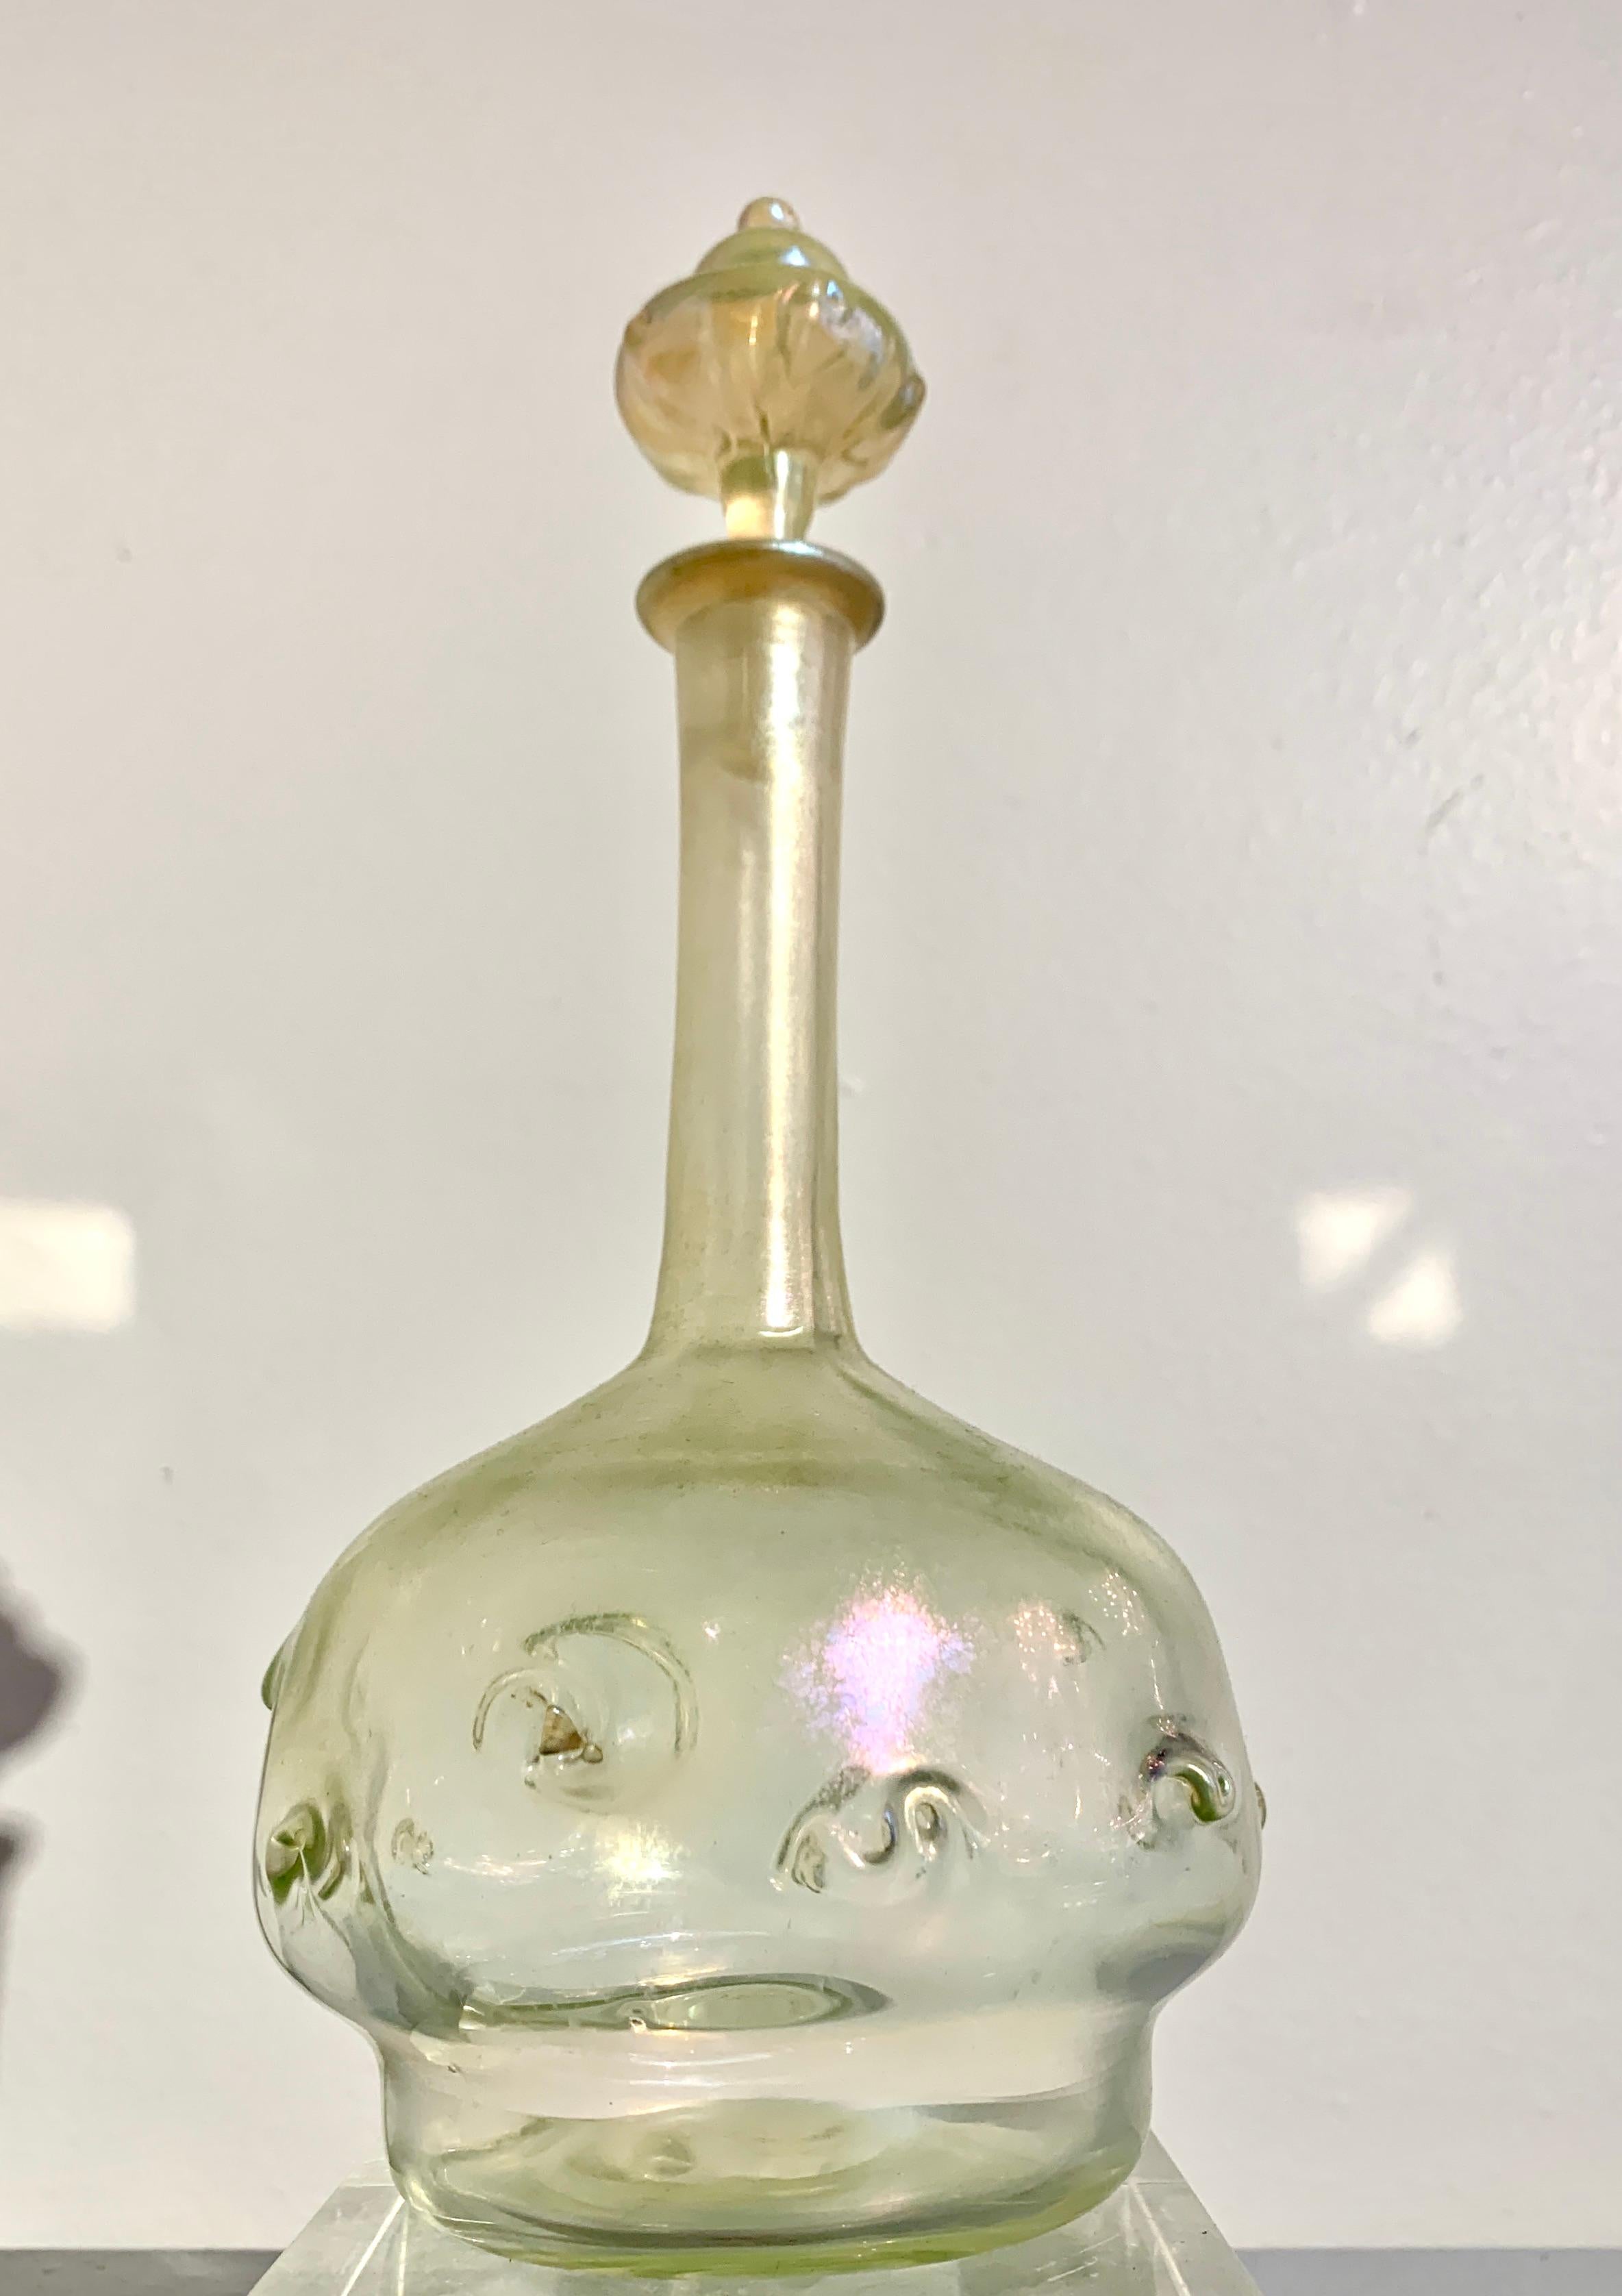 Une merveilleuse carafe et un bouchon en verre favrile des Studios Tiffany avec un design en queue de cochon, période Art Nouveau, début du 20e siècle, États-Unis. 

Le verre transparent présente une merveilleuse iridescence subtile qui joue